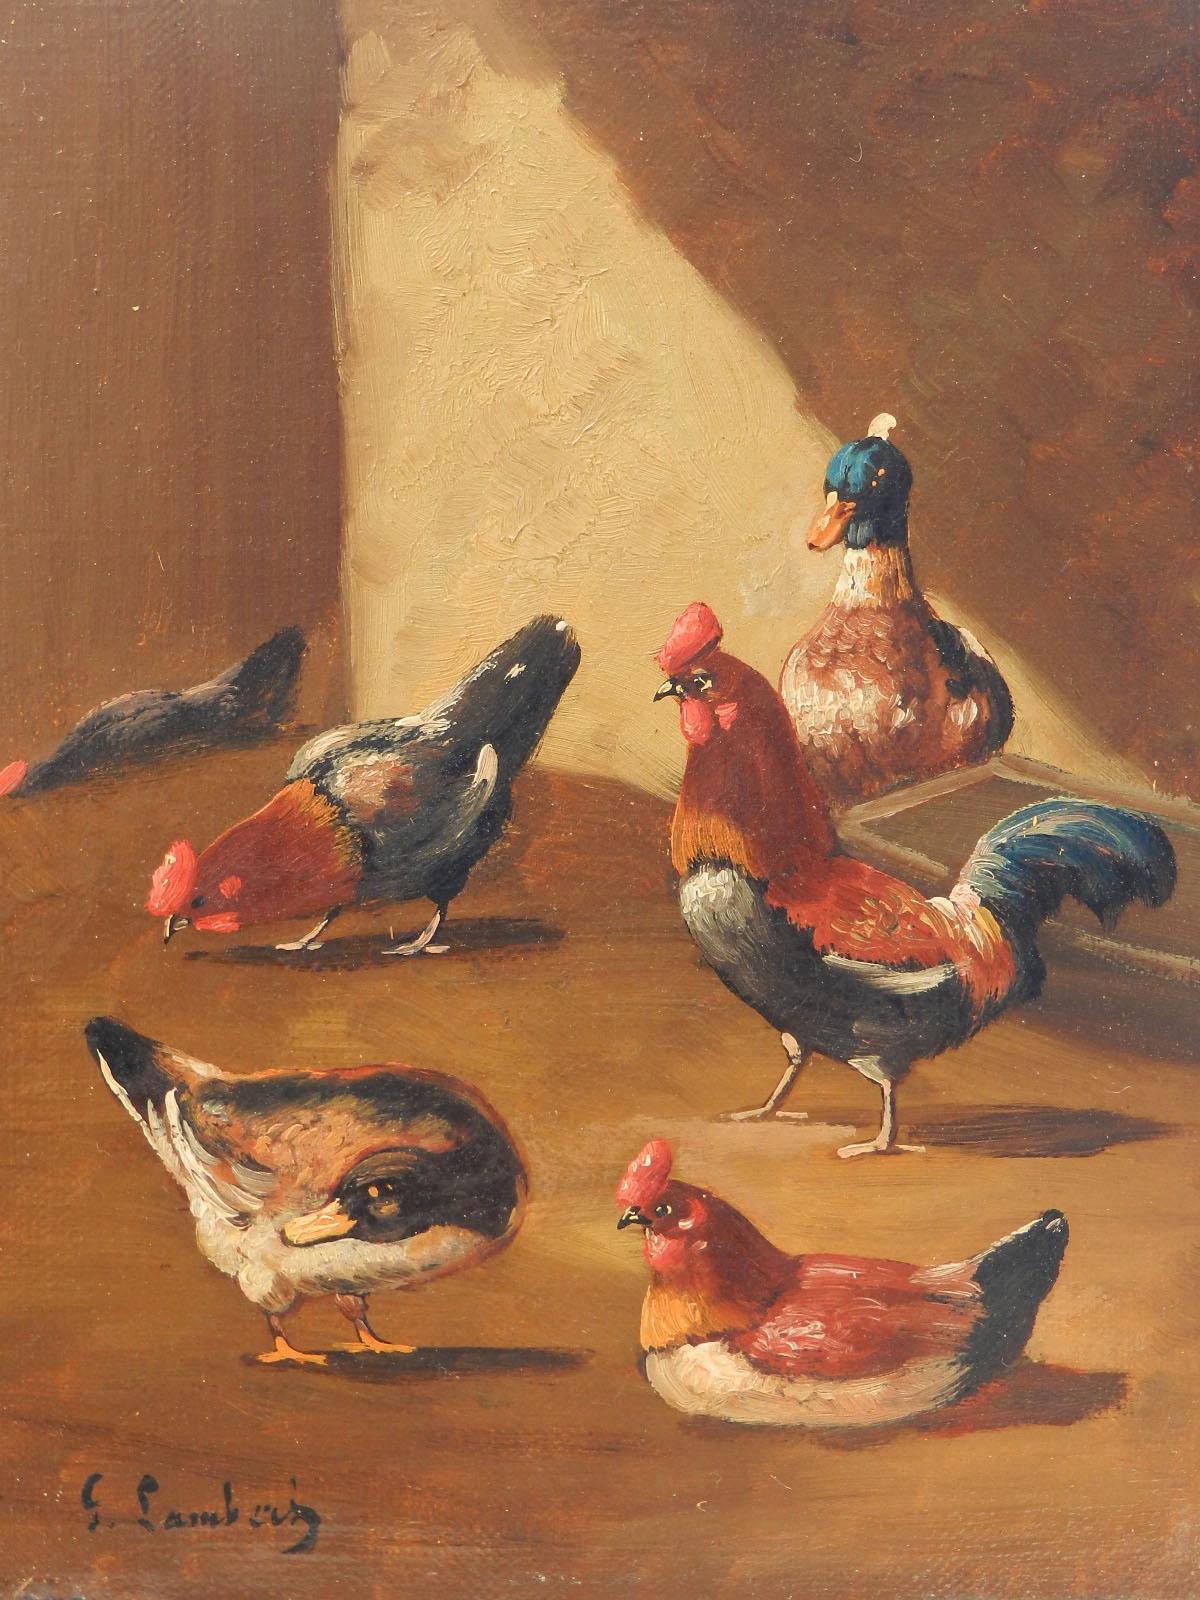 Animal Painting Unknown - Peinture à l'huile française du 19ème siècle représentant une ferme, signée Lambert, avec canards et poulets